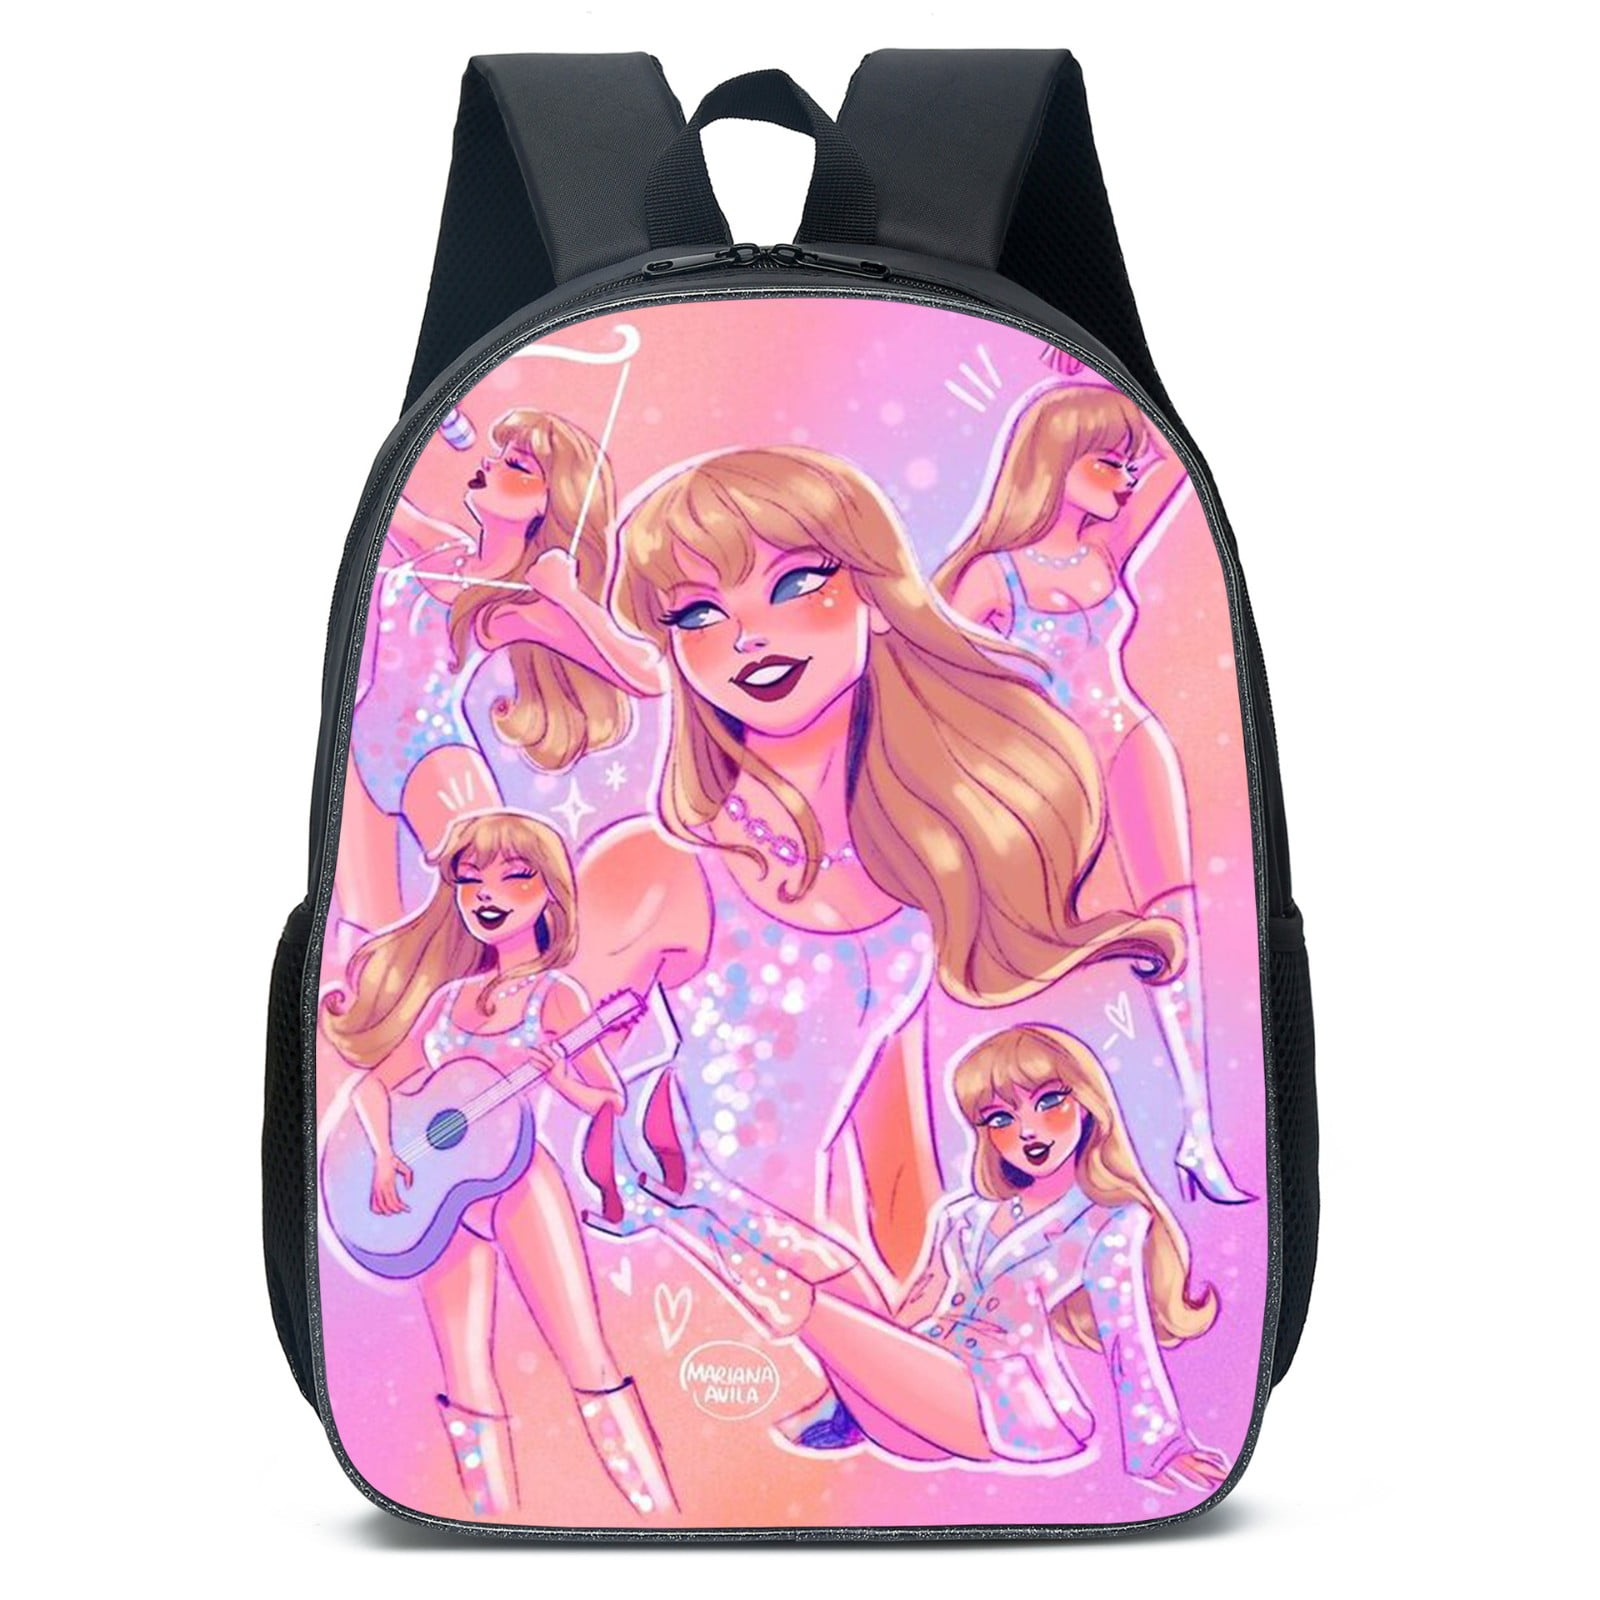 Taylor Swift,1989 Taylors Version,Taylor Swift Bag,3pc 1989 Backpack  Student Shoulder Bag Travel Laptop Backpack Gift 